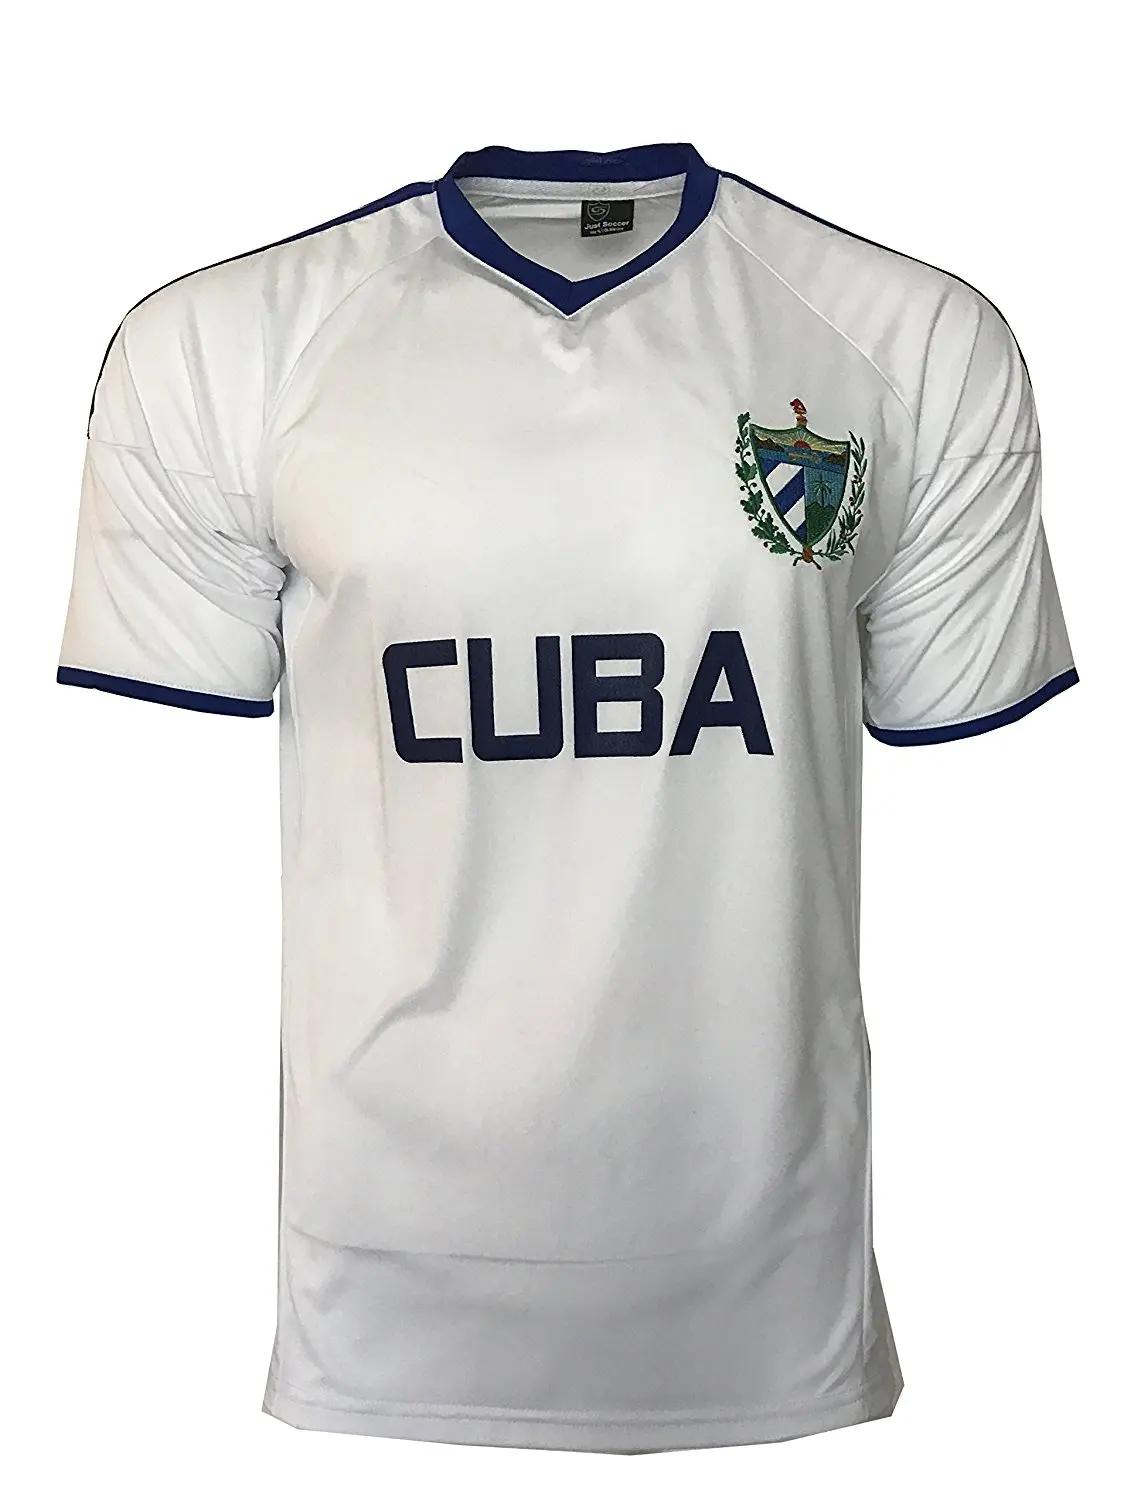 cuba soccer team jersey